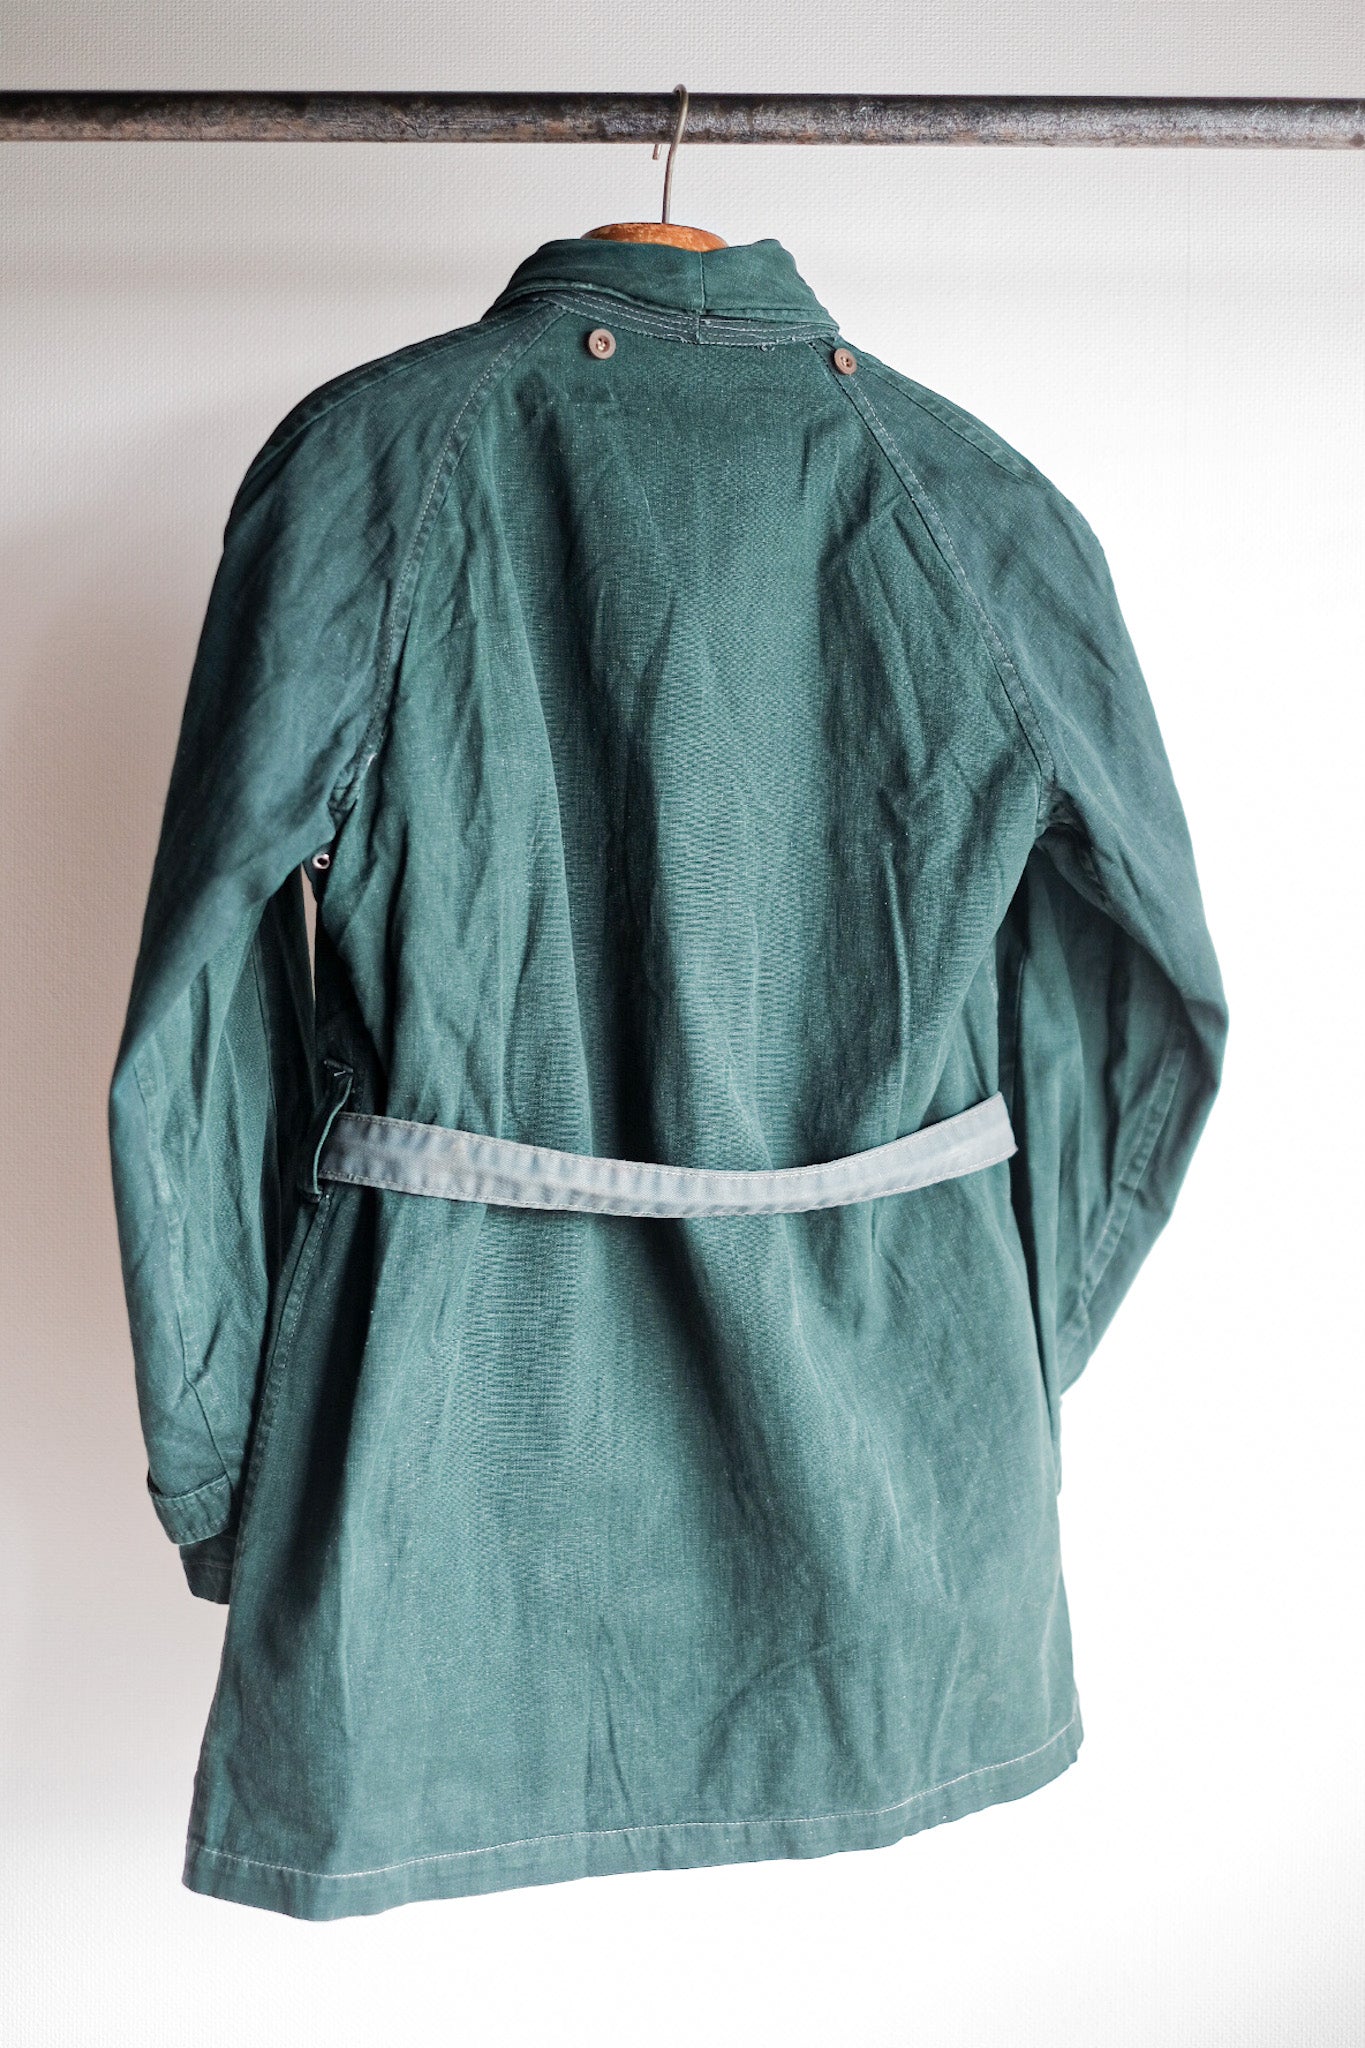 [〜40年代]法國軍隊雙胸綠色亞麻帆布夾克